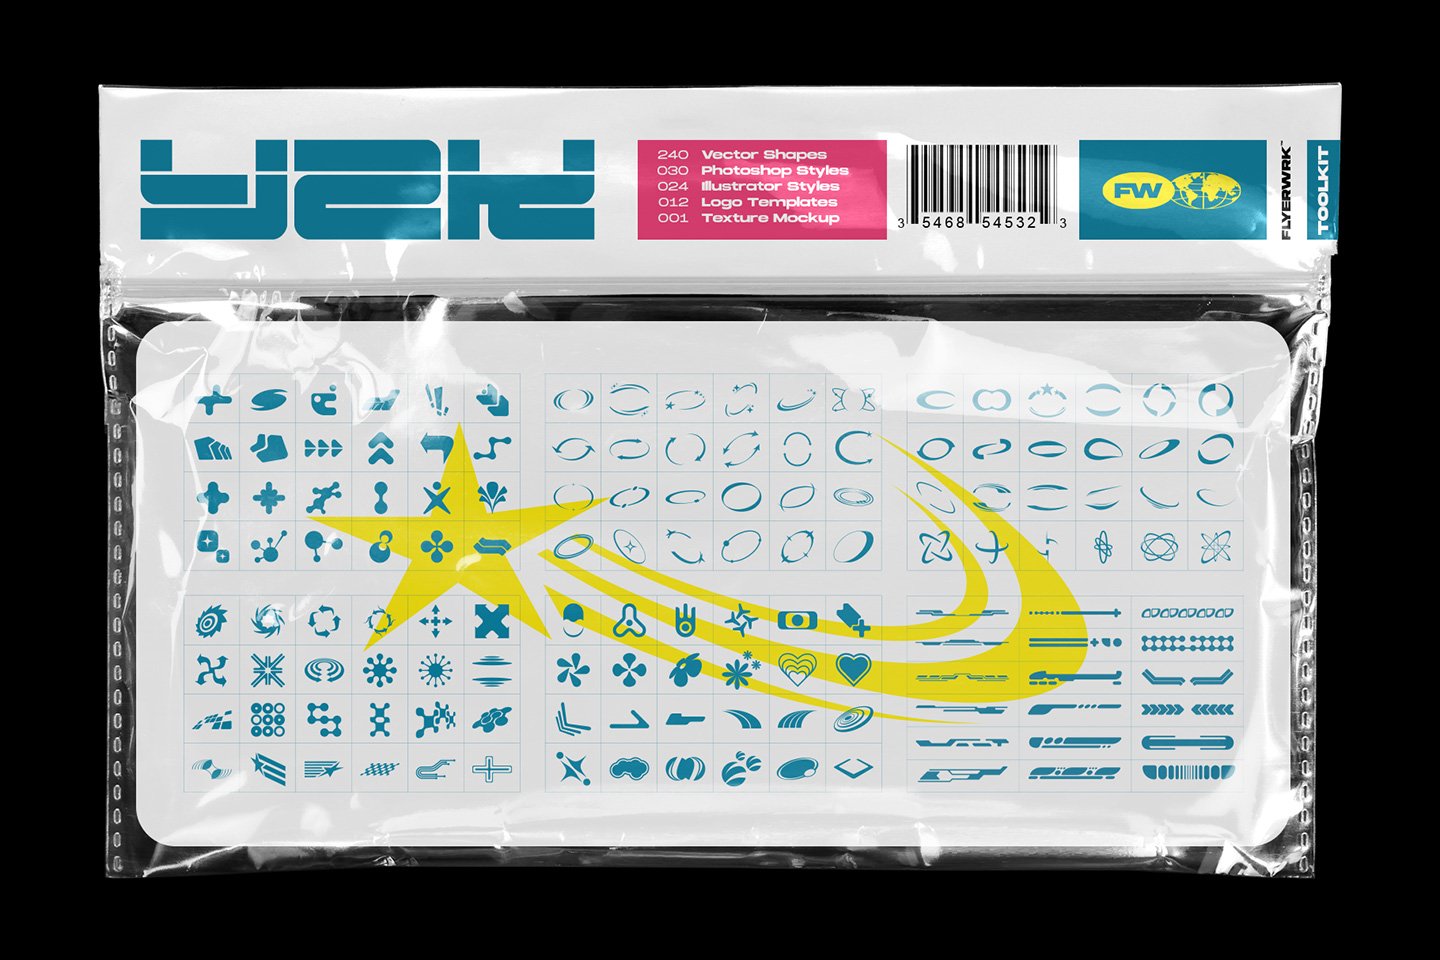 Flyerwrk 千禧年Y2K风格高质量抽象形状酸性封面艺术社交图形包 Flyerwrk–Y2K TOOLKIT 图标素材 第1张